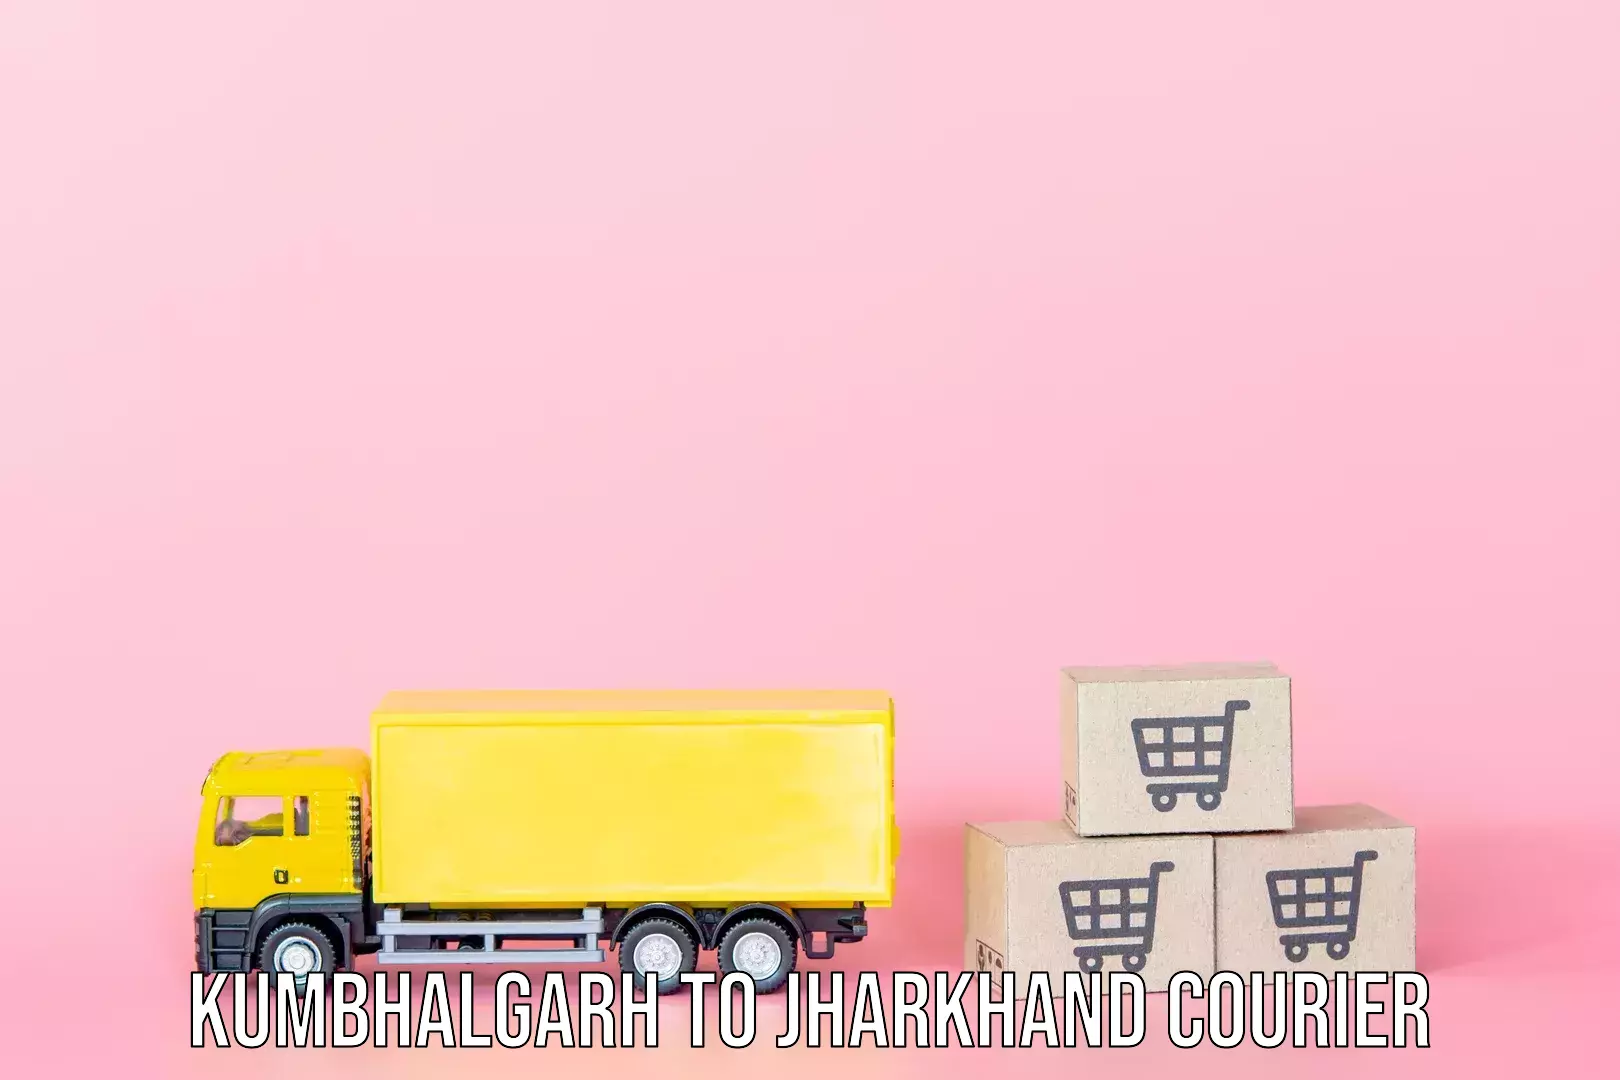 Luggage delivery app Kumbhalgarh to Tandwa